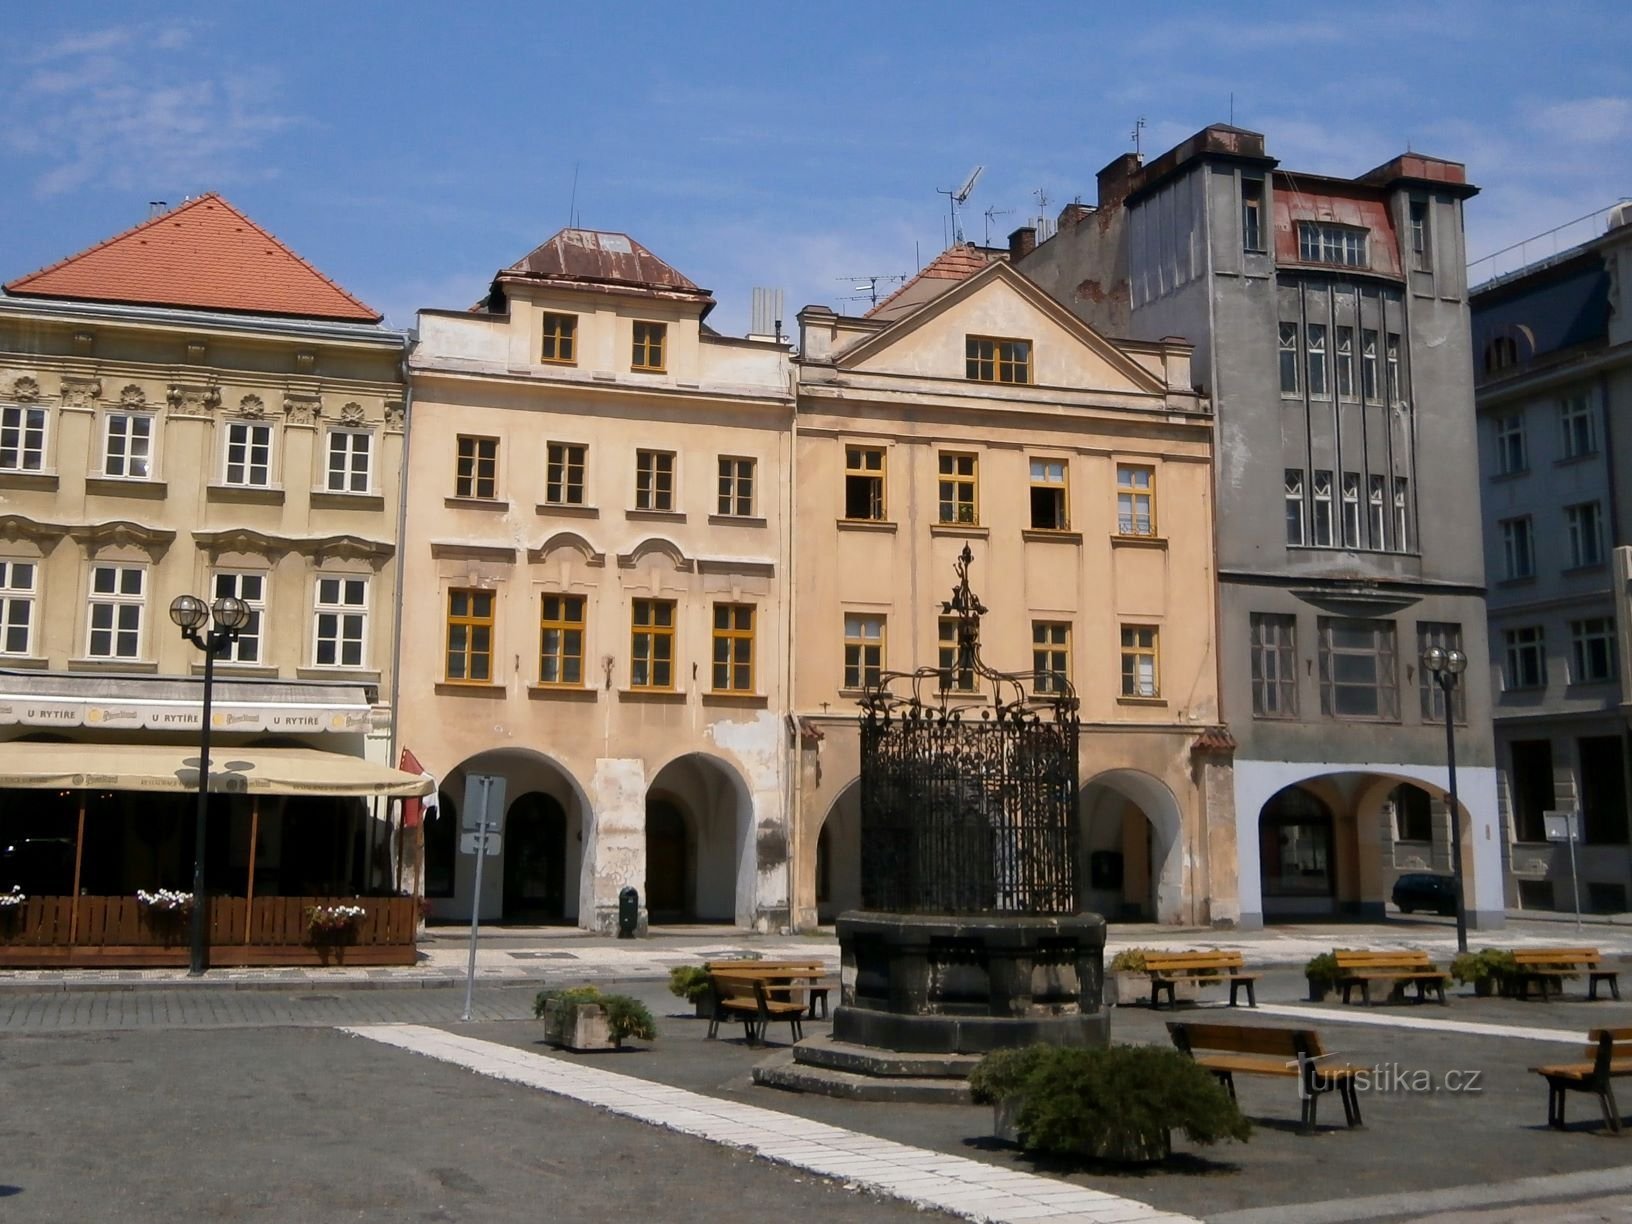 Velké náměstí nr. 143-142 (Hradec Králové, 23.7.2016. april XNUMX)